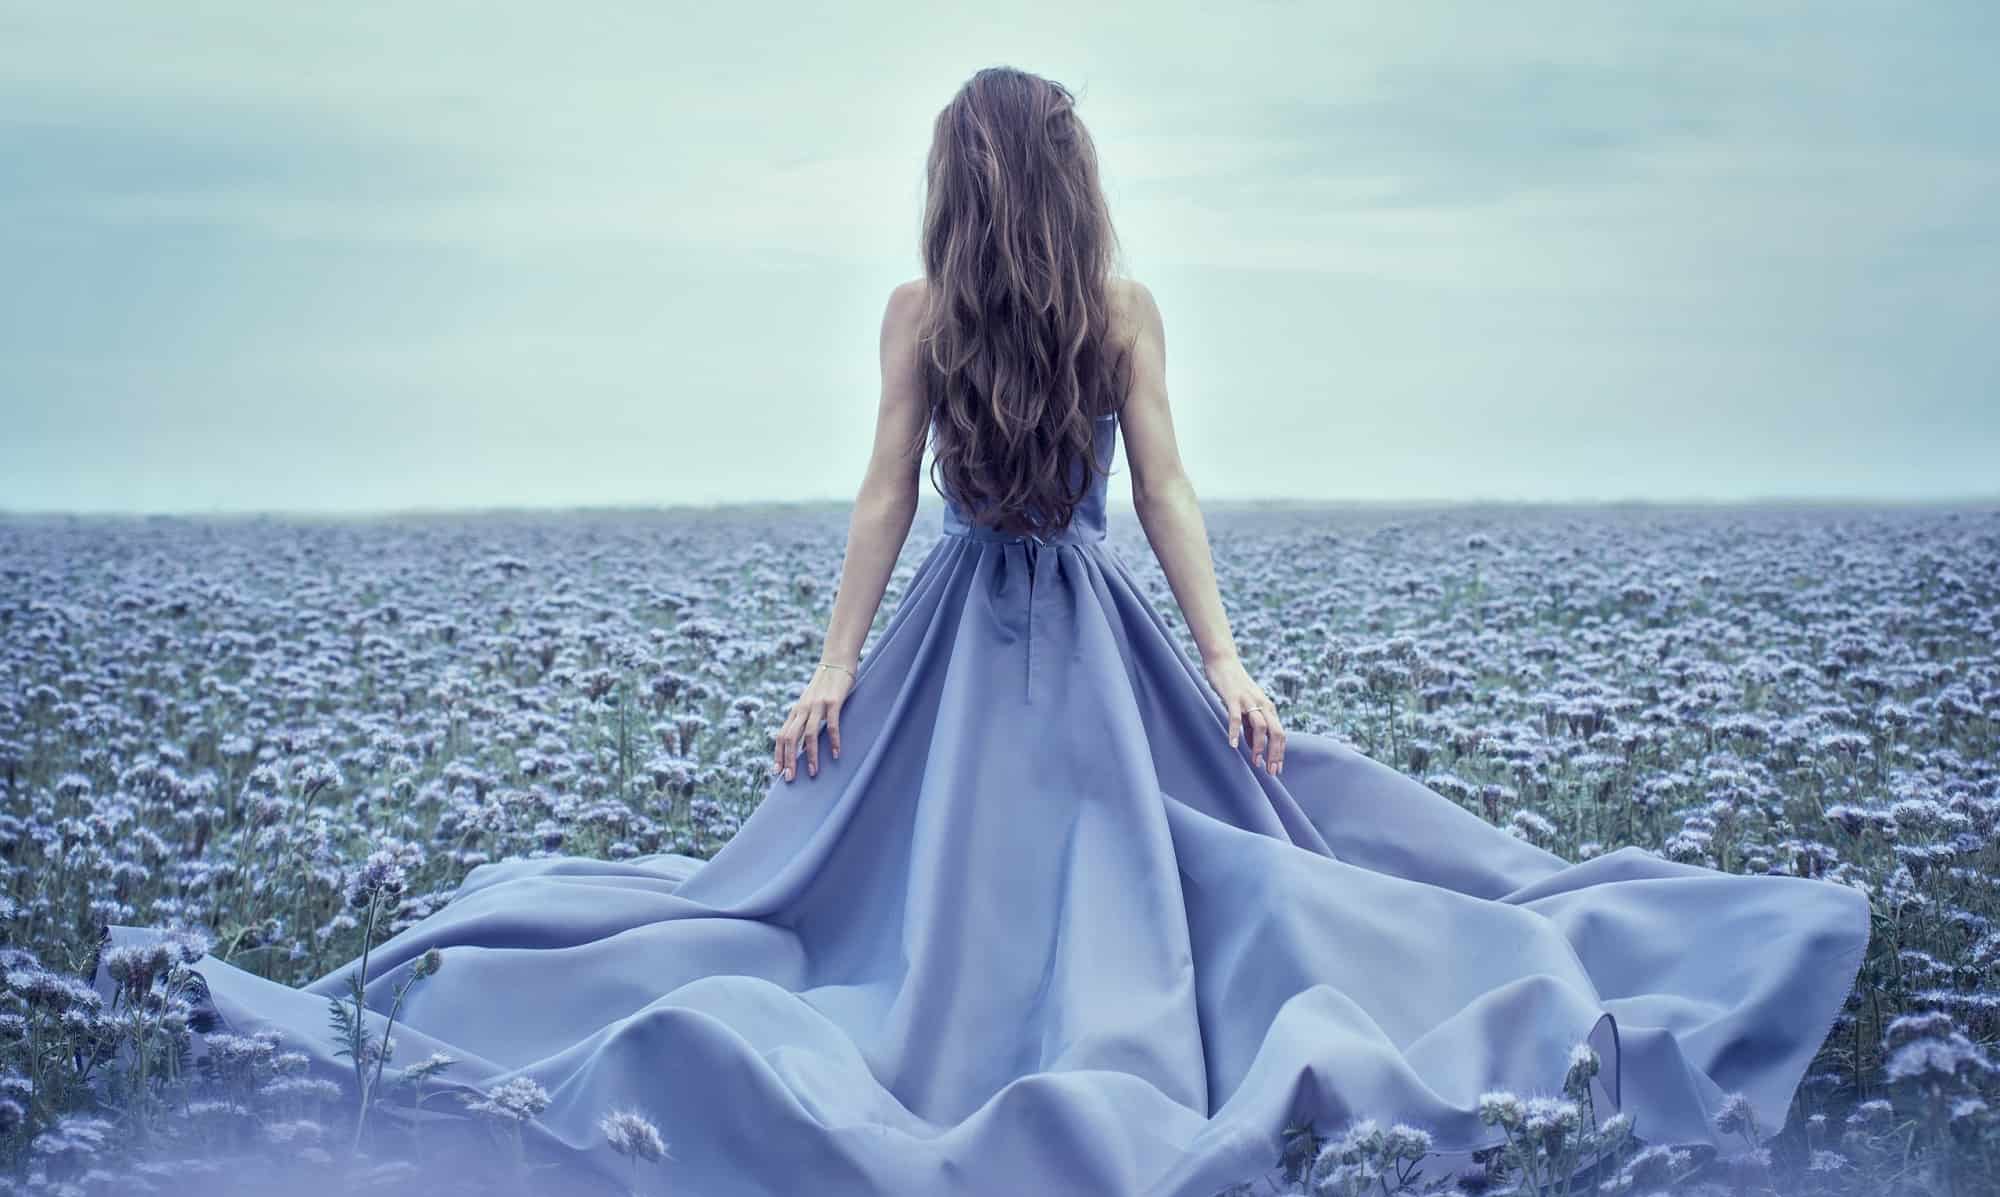 Фото нежной красавицы снимающей синее платье на улице